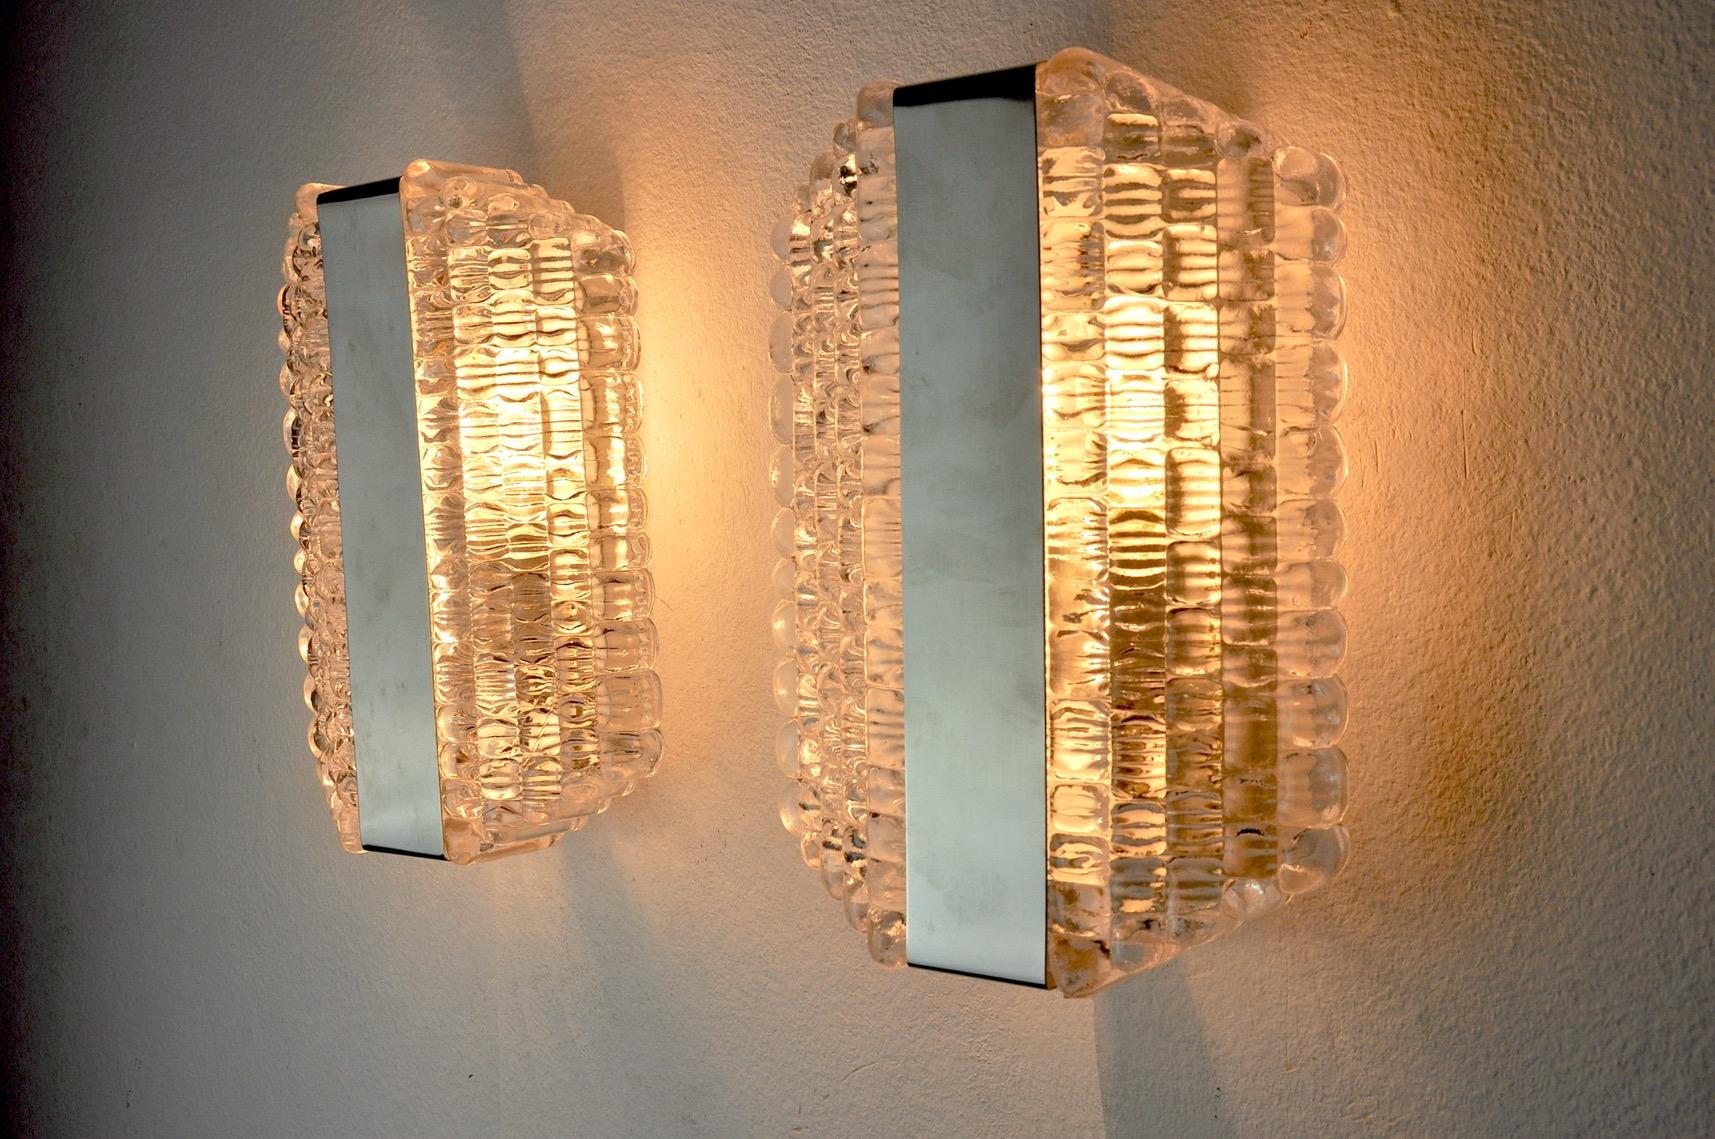 Sehr schönes Paar Kaiser Leuchten Wandlampen, entworfen und hergestellt in Deutschland in den 1960er Jahren.
Struktur aus mattiertem Glas und weißem Metall.
Einzigartiges Objekt, das wunderbar leuchtet und Ihrer Einrichtung einen echten Design-Touch